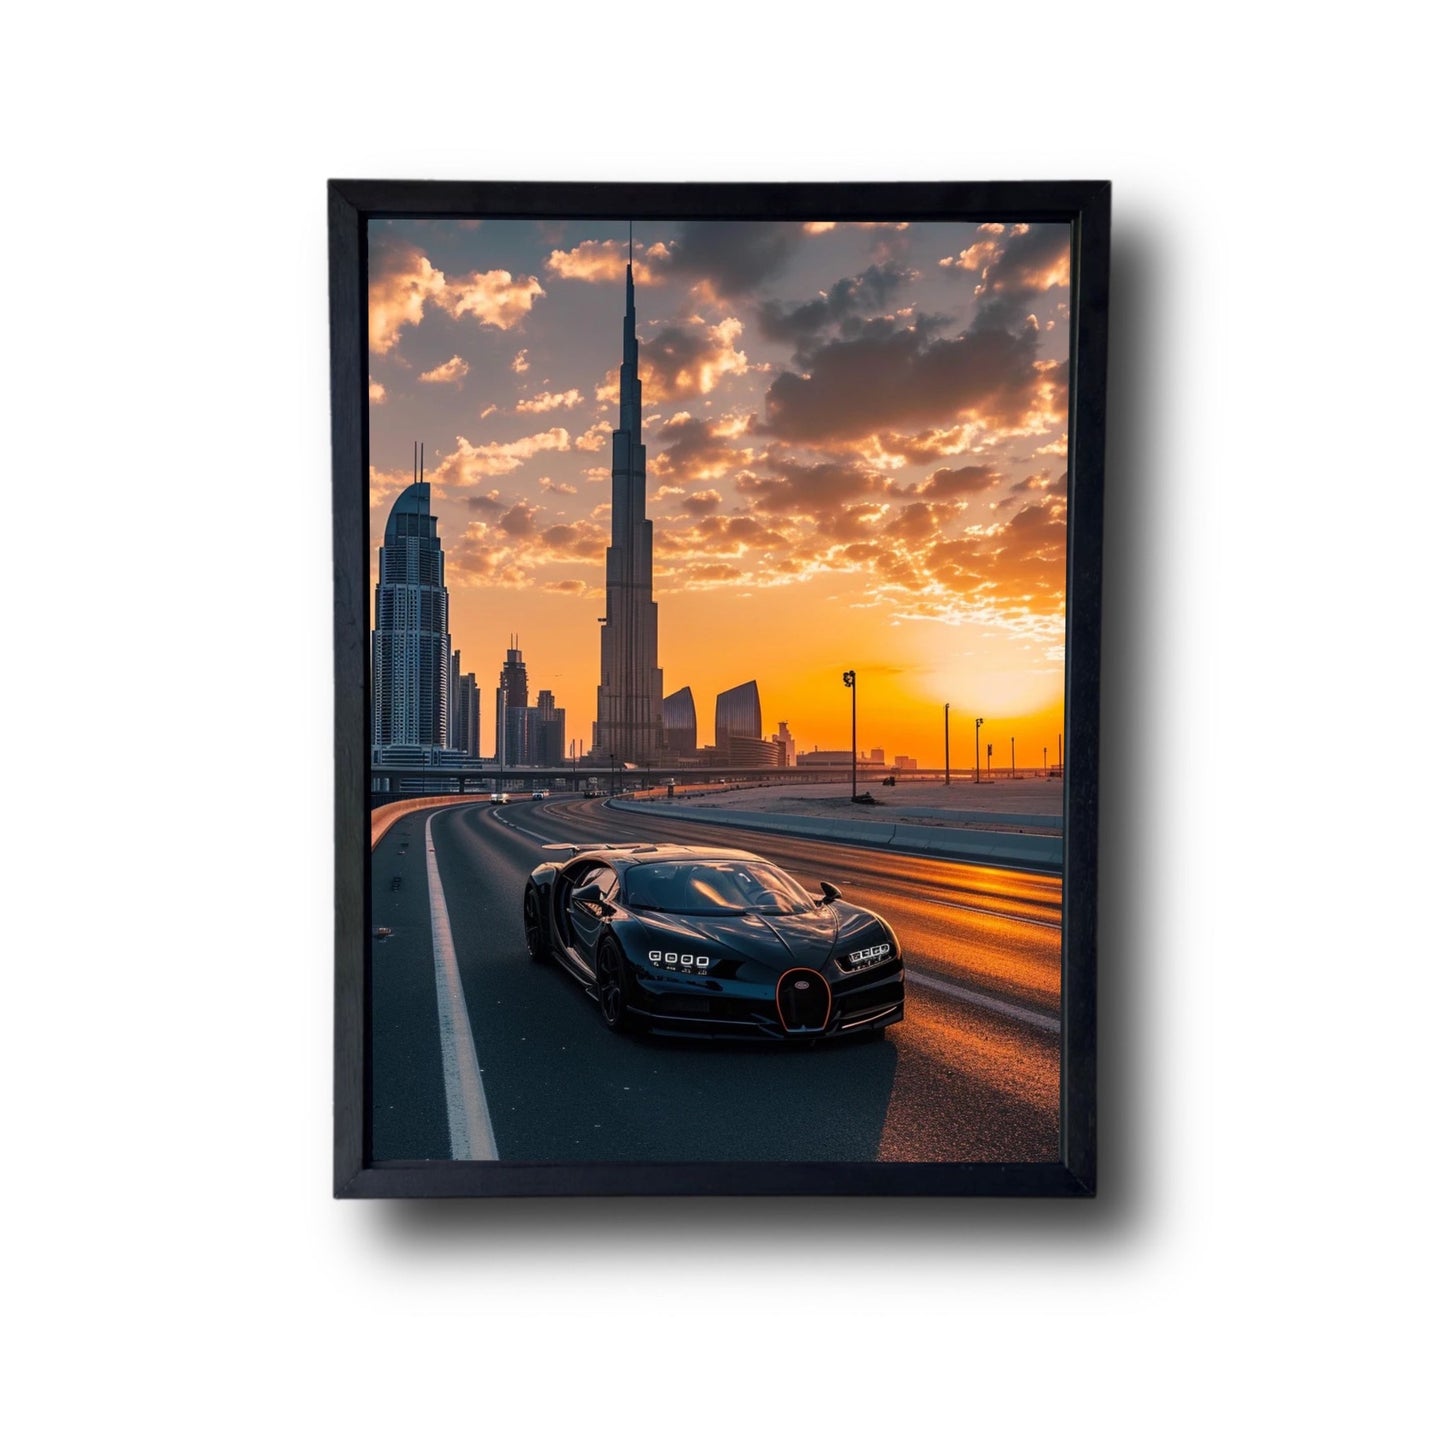 Dubai Bugatti Front View